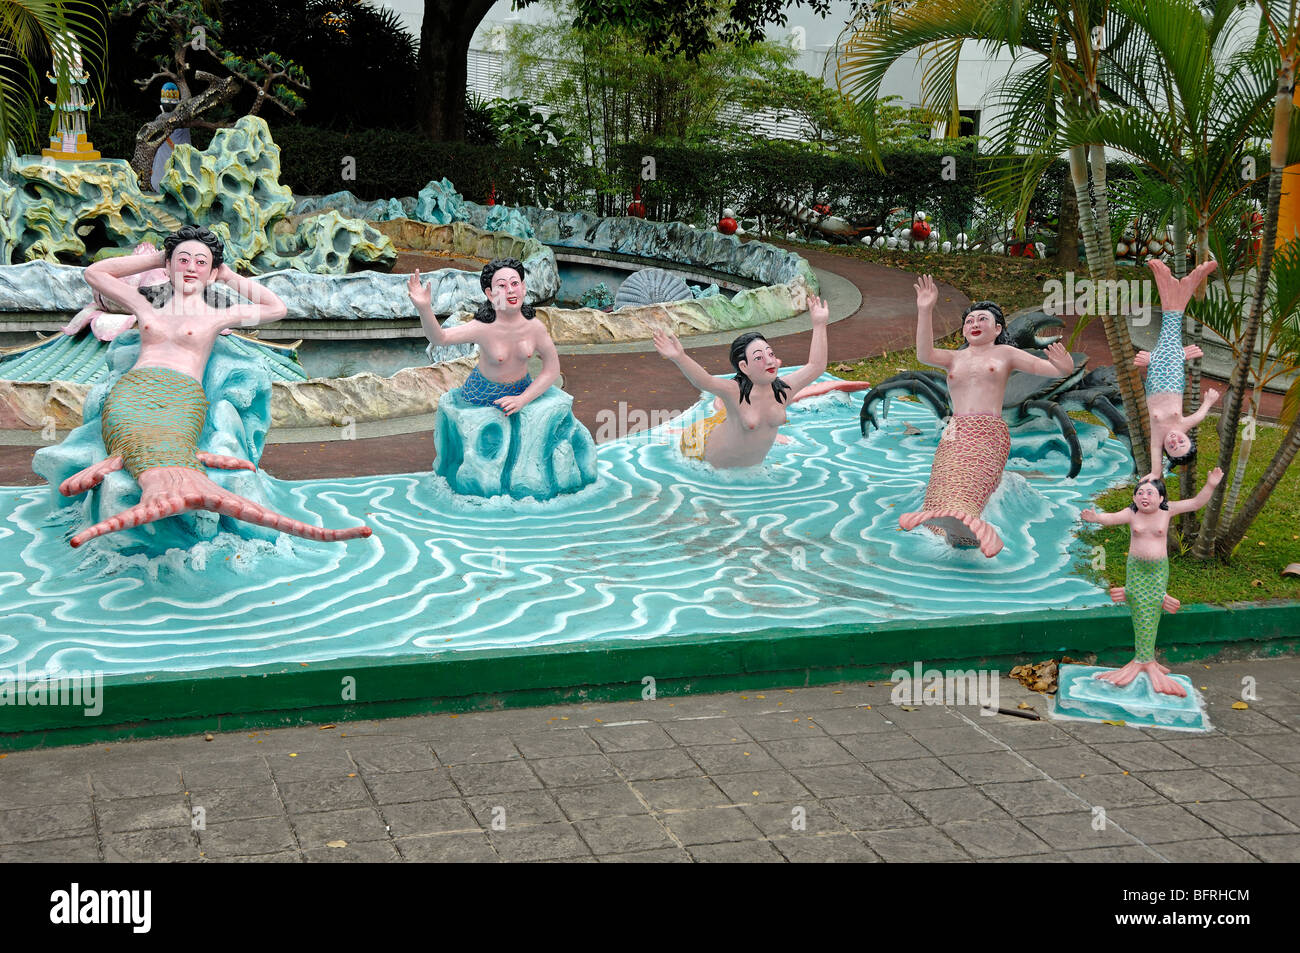 Meerjungfrauen oder Meerjungfrau Statuen in der Signatur Teich, Tiger Balm Gardens Chinesisch Theme Park, Singapur Stockfoto